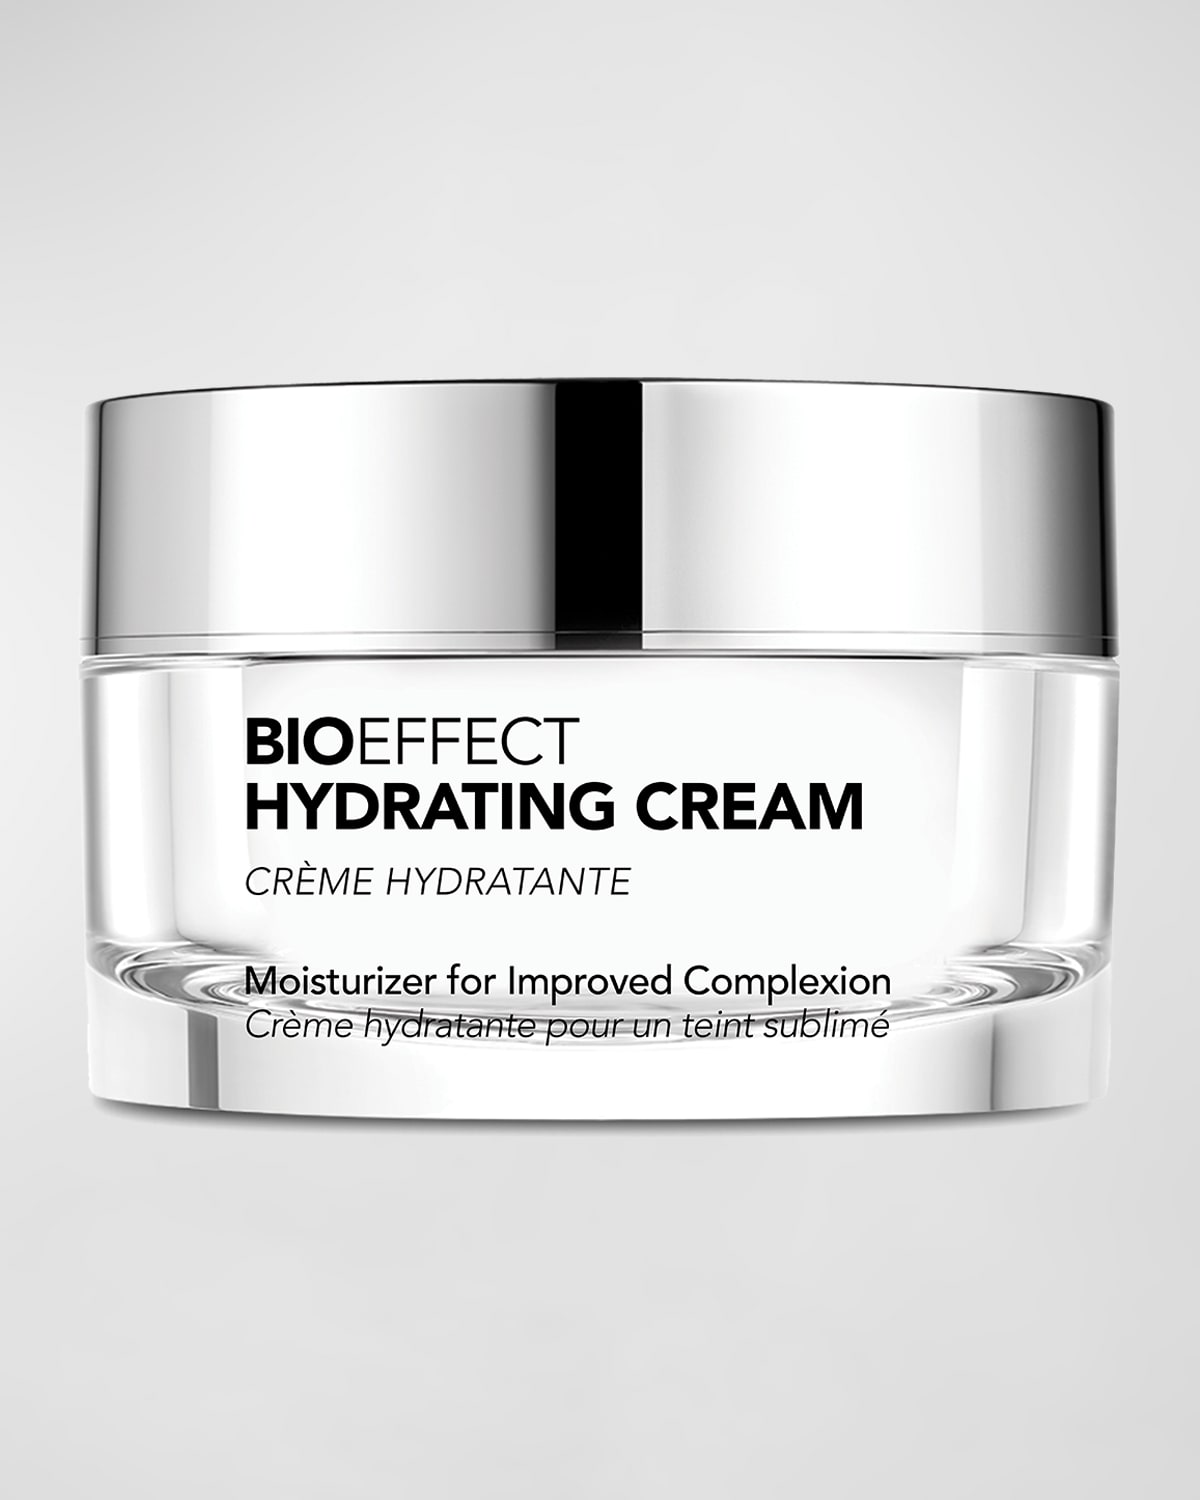 BIOEFFECT Hydrating Cream, 1 oz.